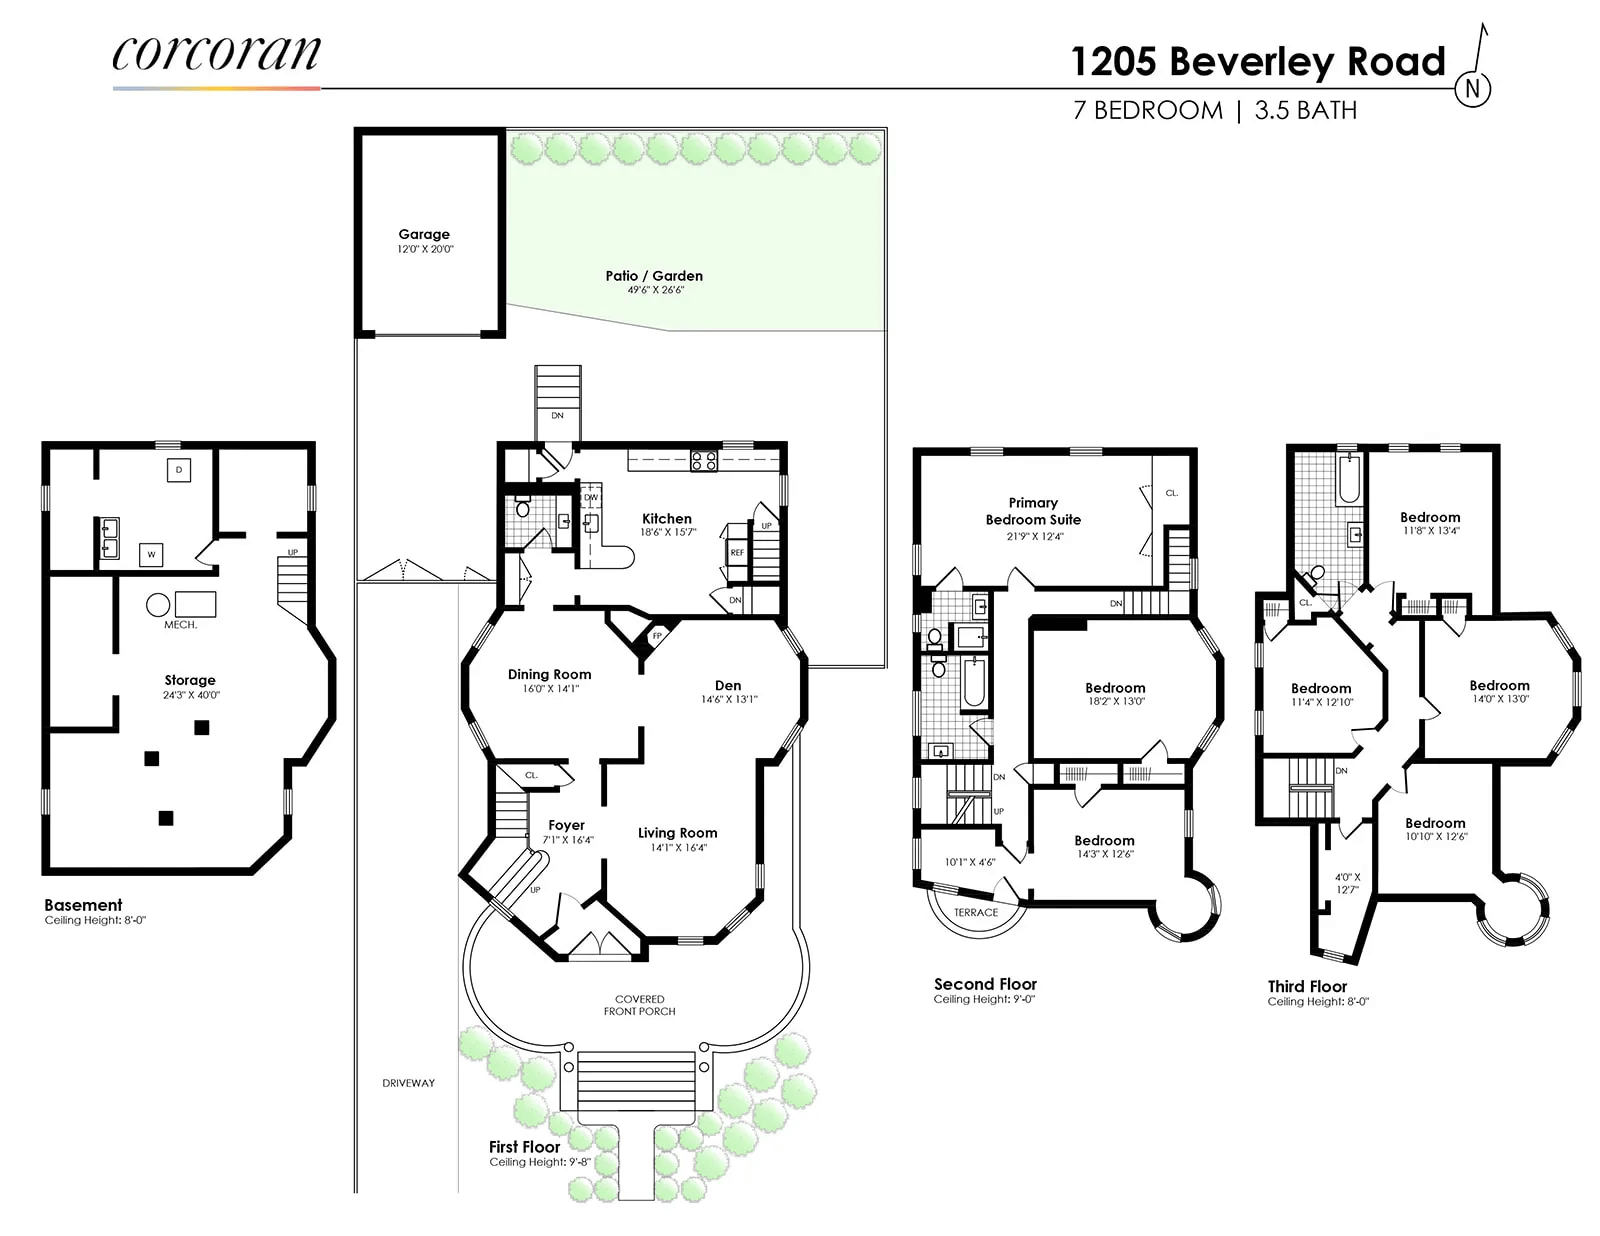 floorplan of 1205 beverley road